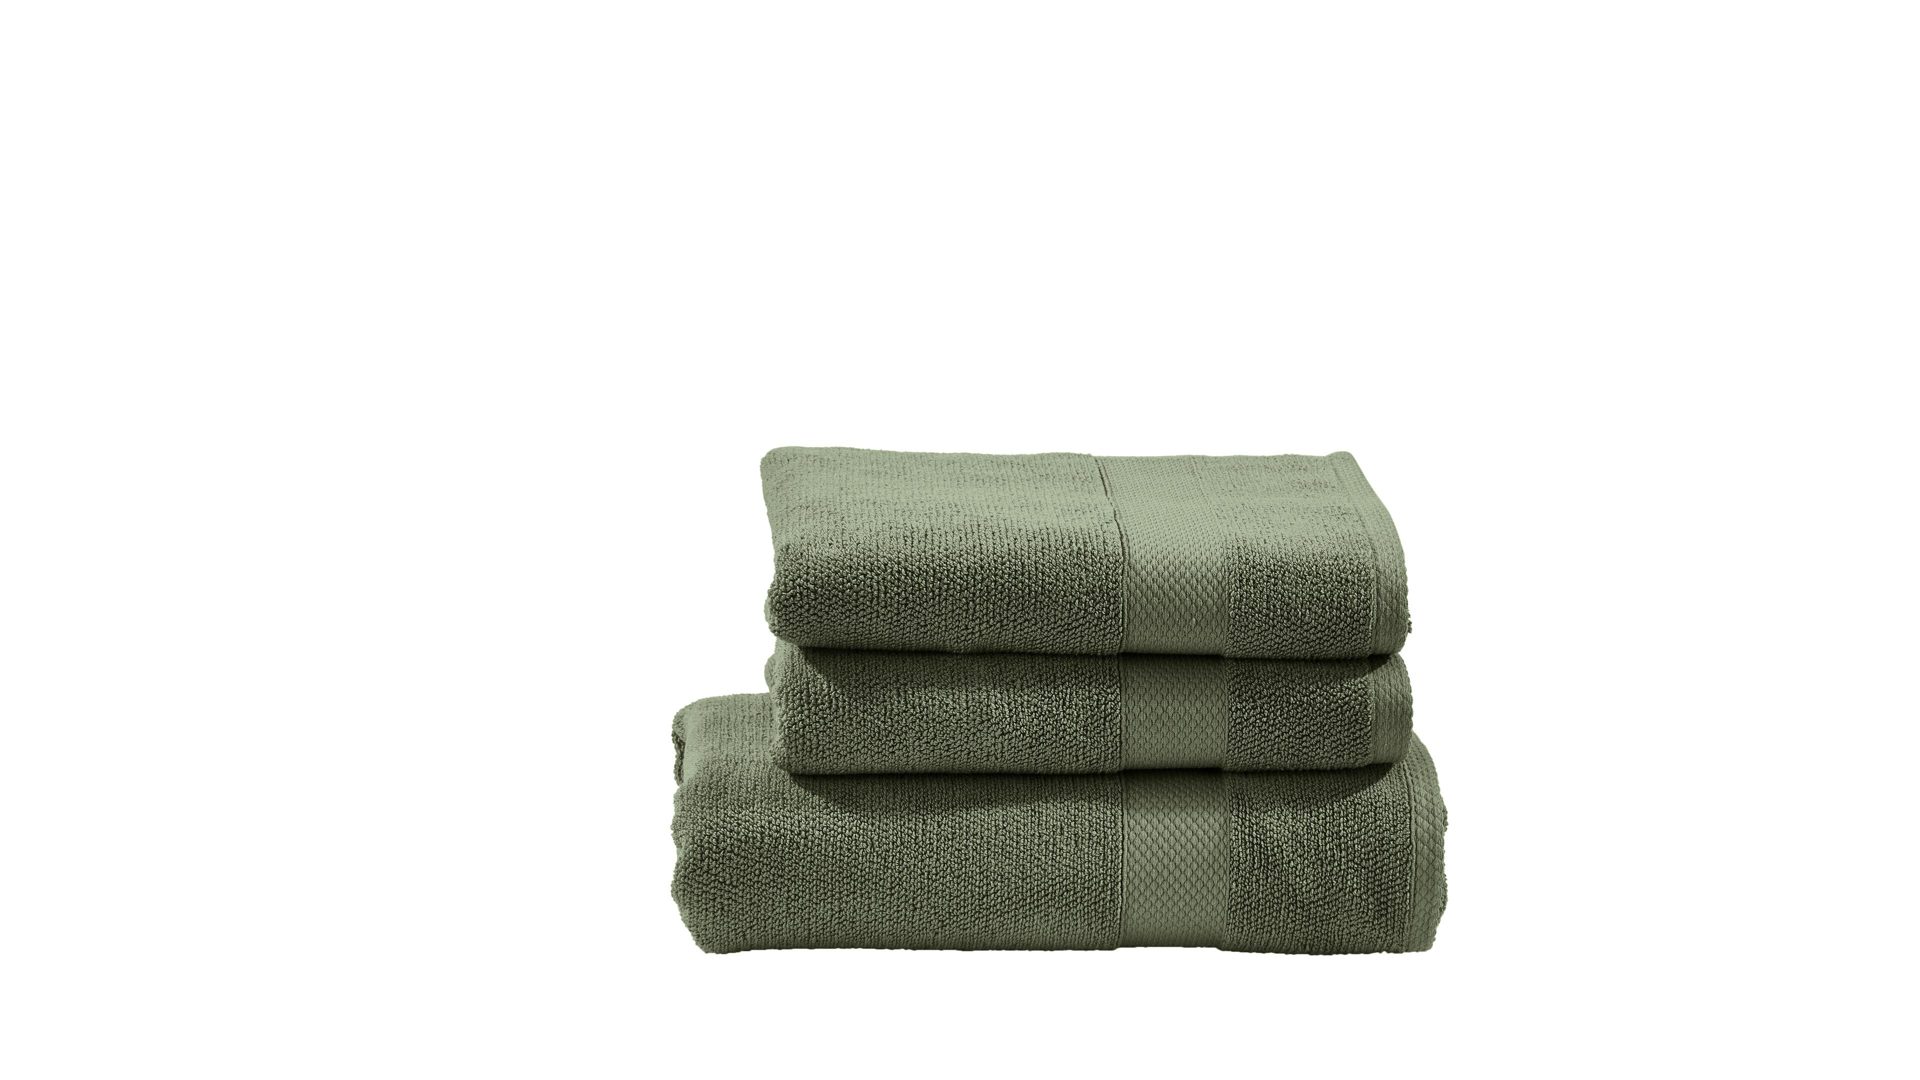 Handtuch-Set Done® by karabel home company aus Stoff in Grün DONE® Handtuch-Set Deluxe für Ihre Heimtextilien khakifarbene Baumwolle  – dreiteilig